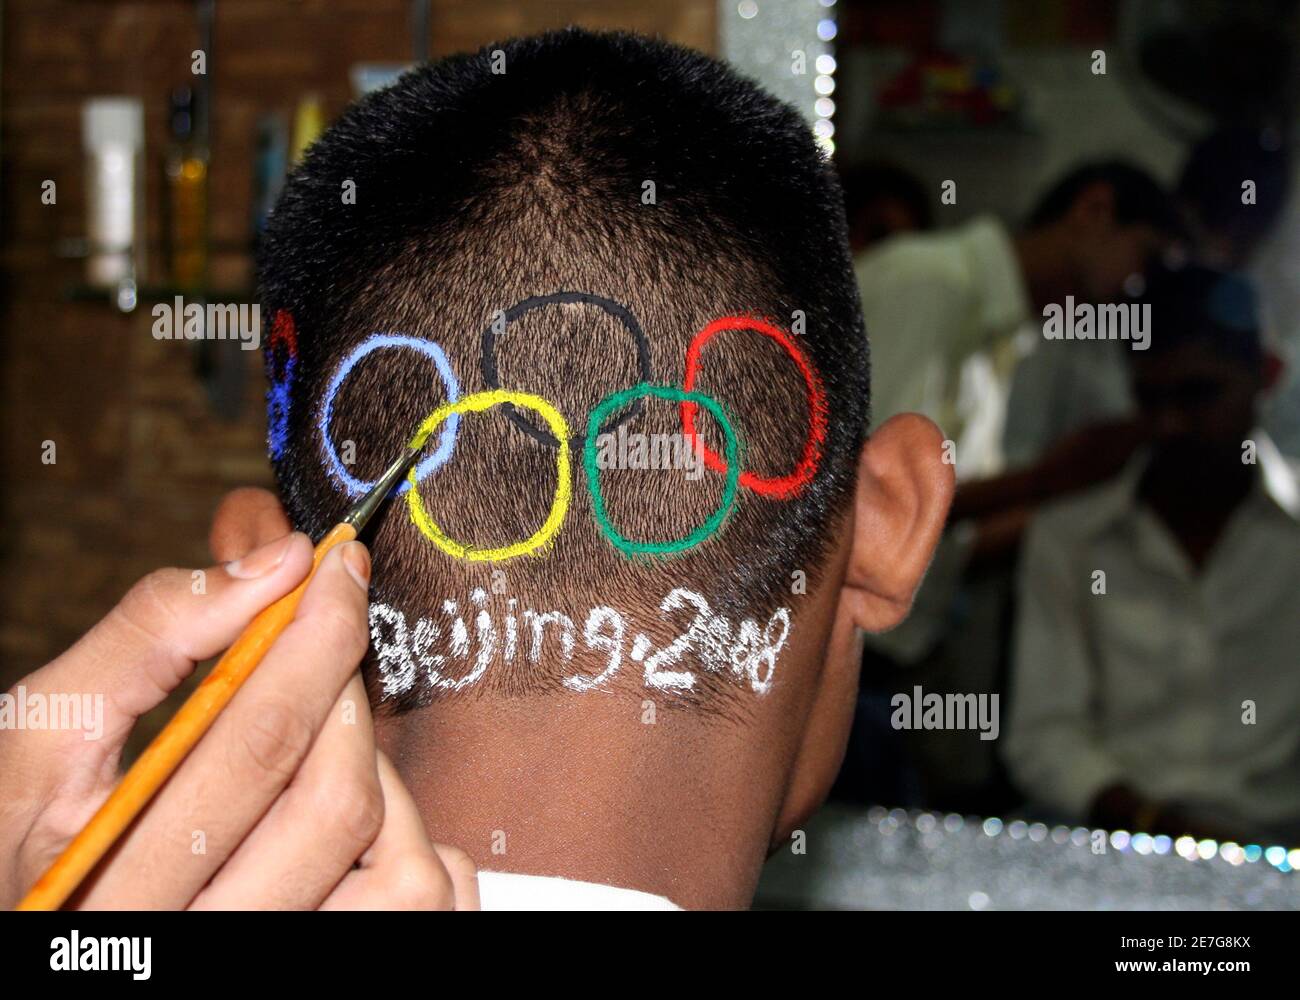 Un homme obtient le logo olympique peint sur sa tête dans la ville indienne occidentale d'Ahmedabad le 8 août 2008. La Chine renaissante a ouvert les Jeux Olympiques vendredi avec une explosion de feux d'artifice lors d'une cérémonie spectaculaire qui a célébré l'histoire de la Chine antique et qui visait à tracer une ligne sous des mois de controverse politique. REUTERS/Amit Dave (INDE) Banque D'Images